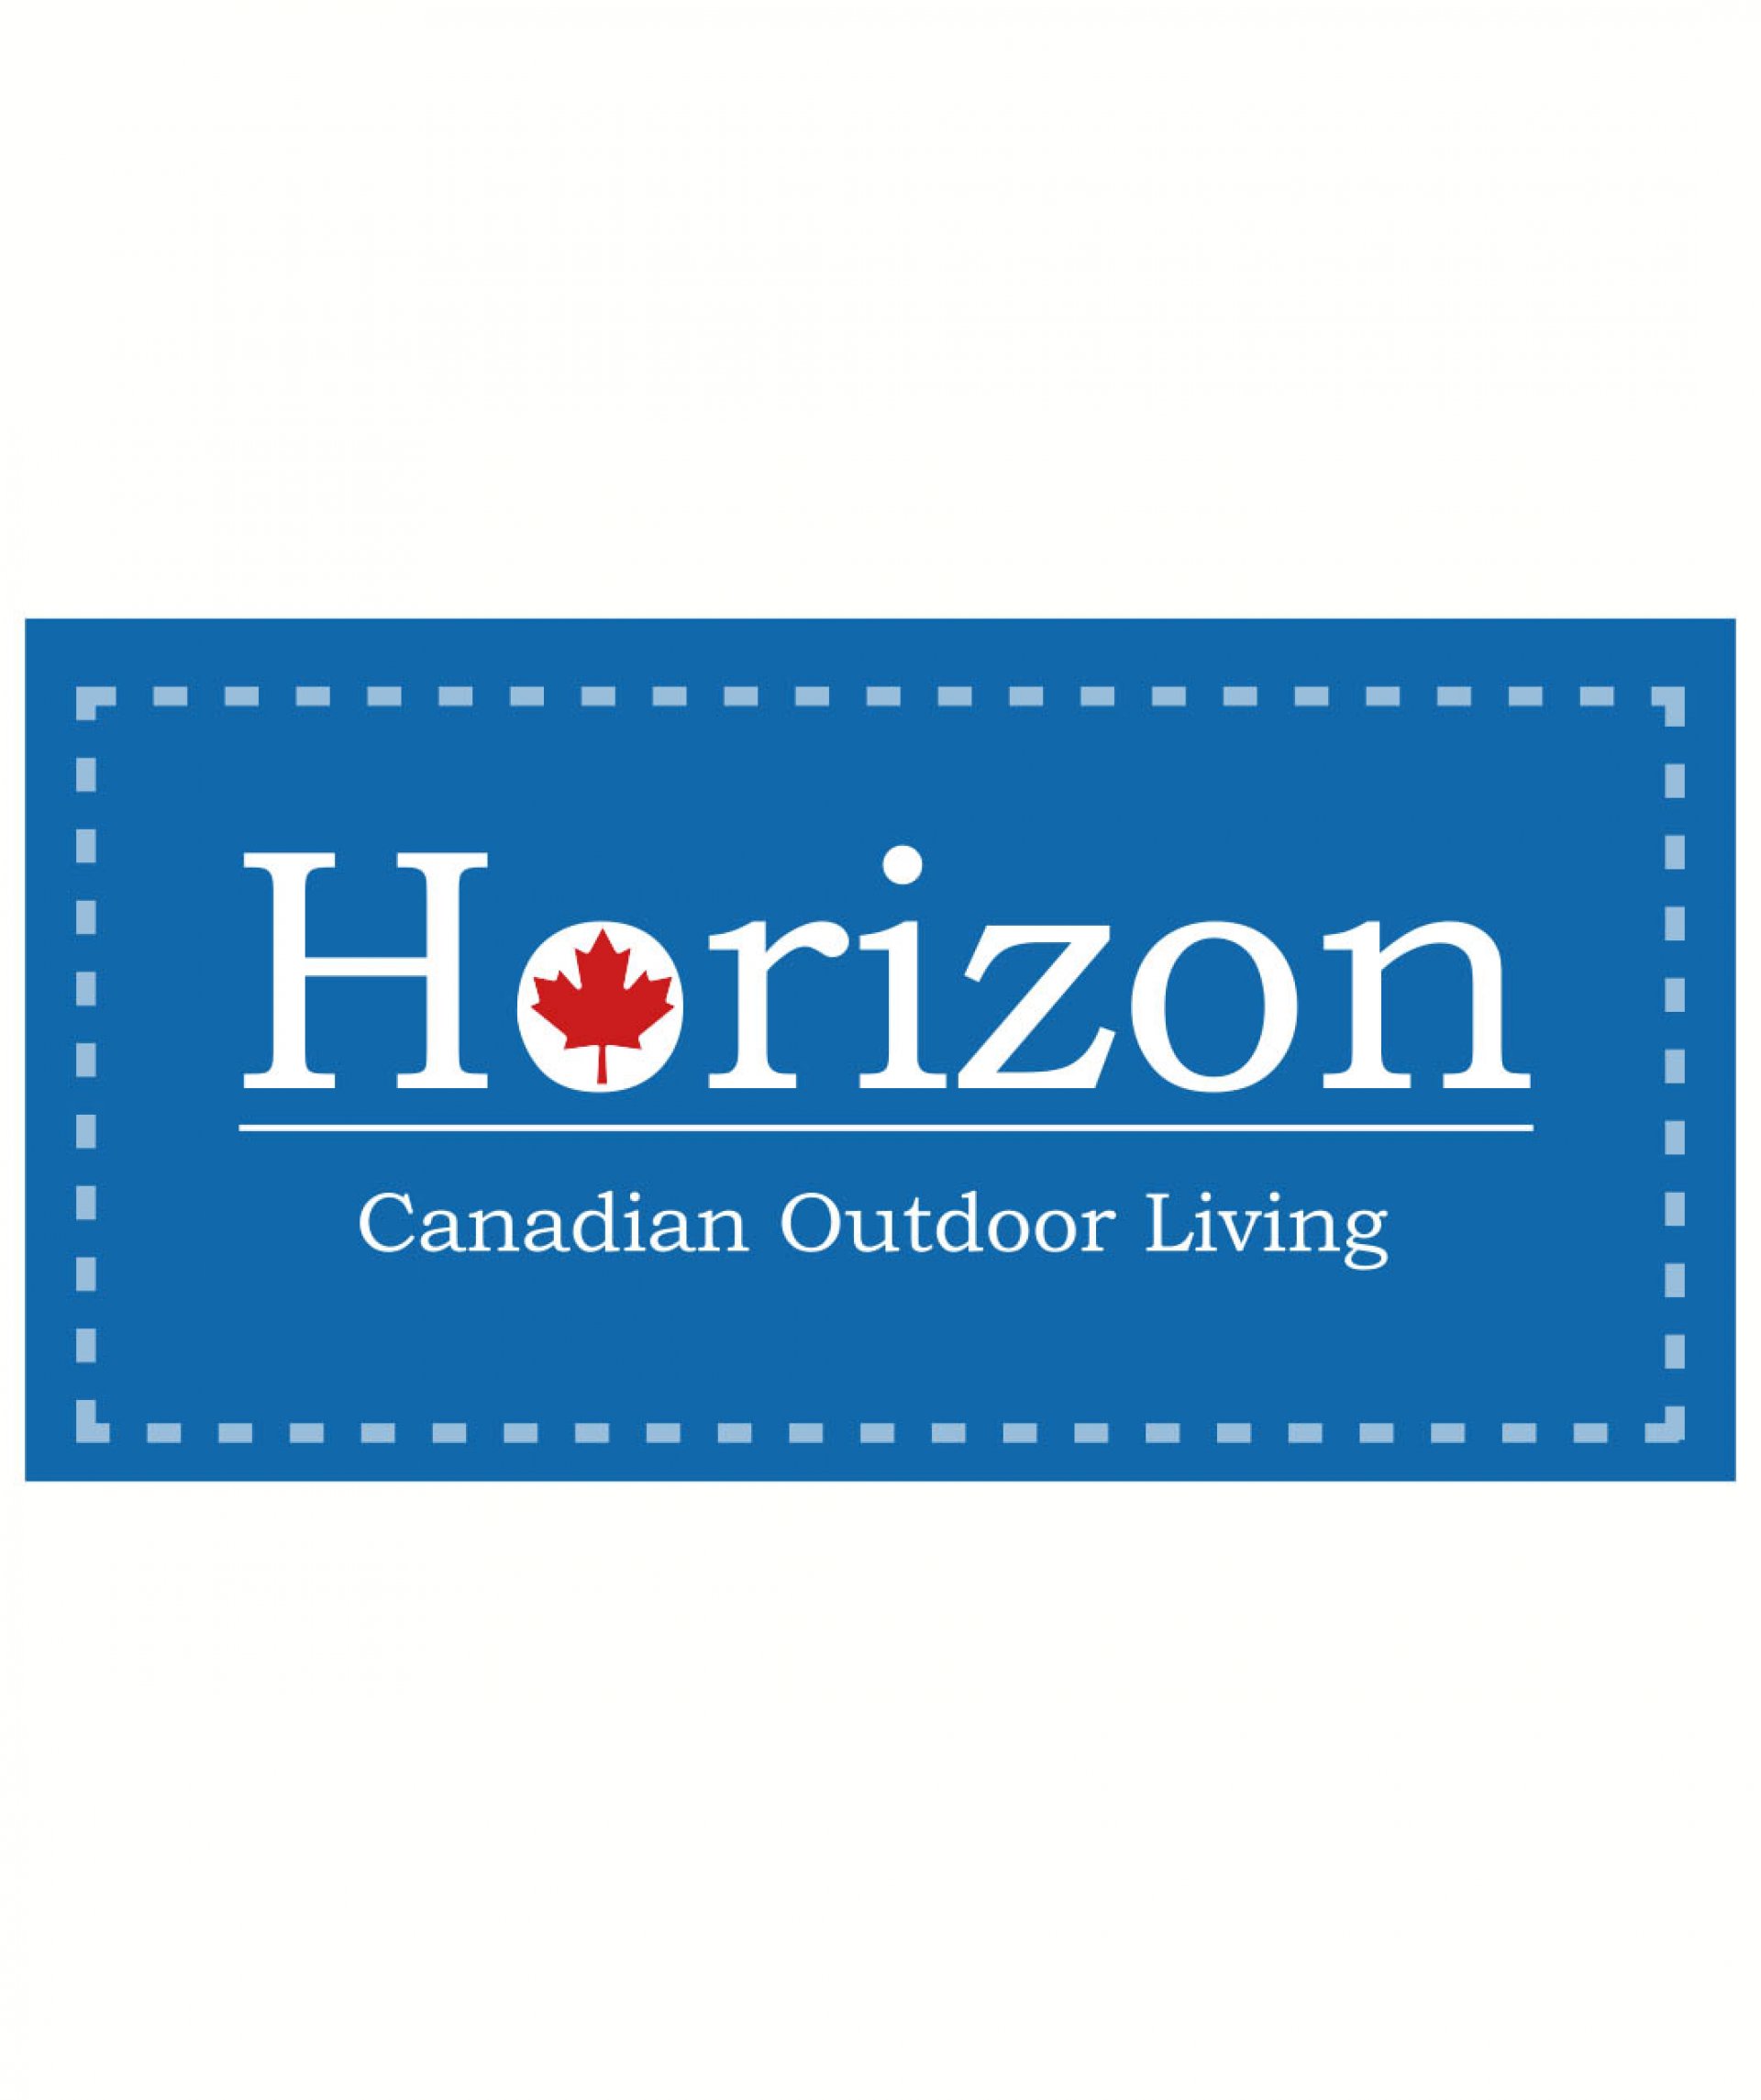 Horizon from Canada